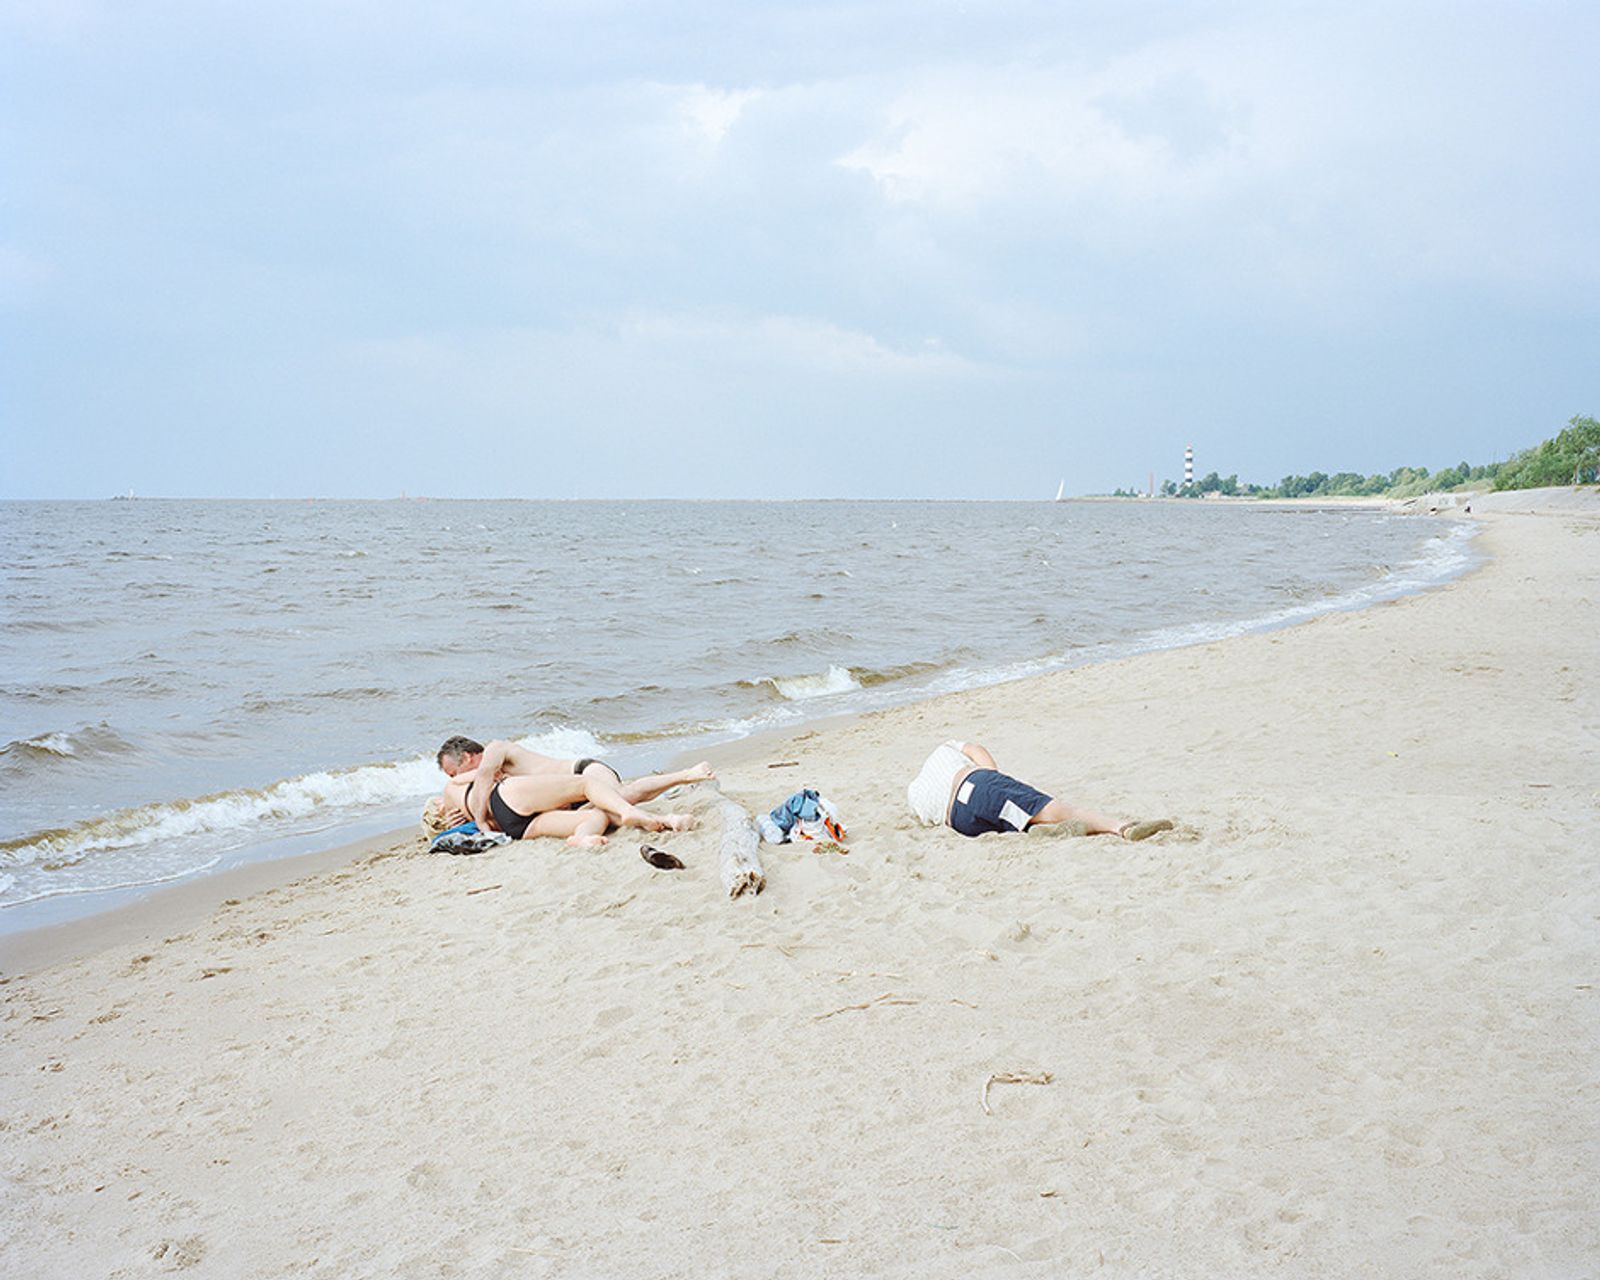 © Andrejs Strokins - Daugavgrīva beach, 2013